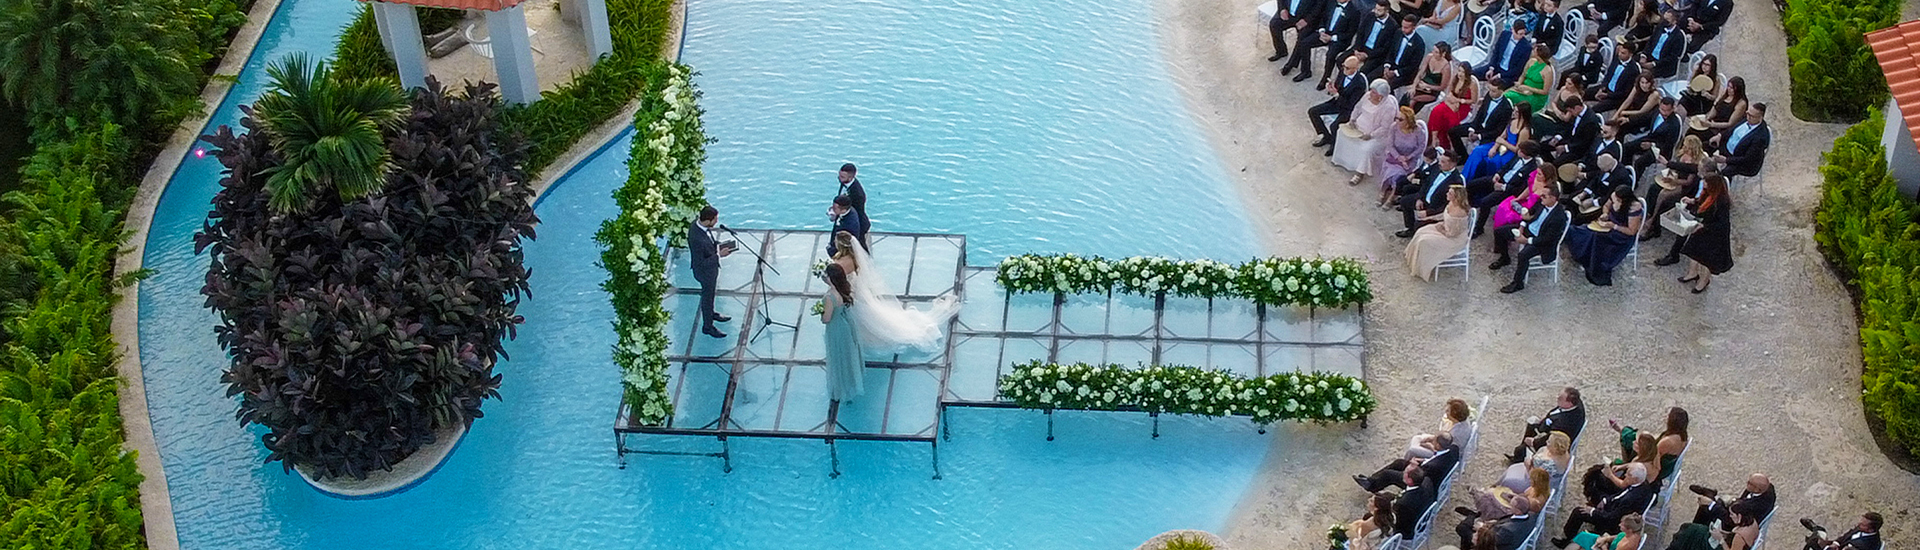 wedding happening on platform over a pool